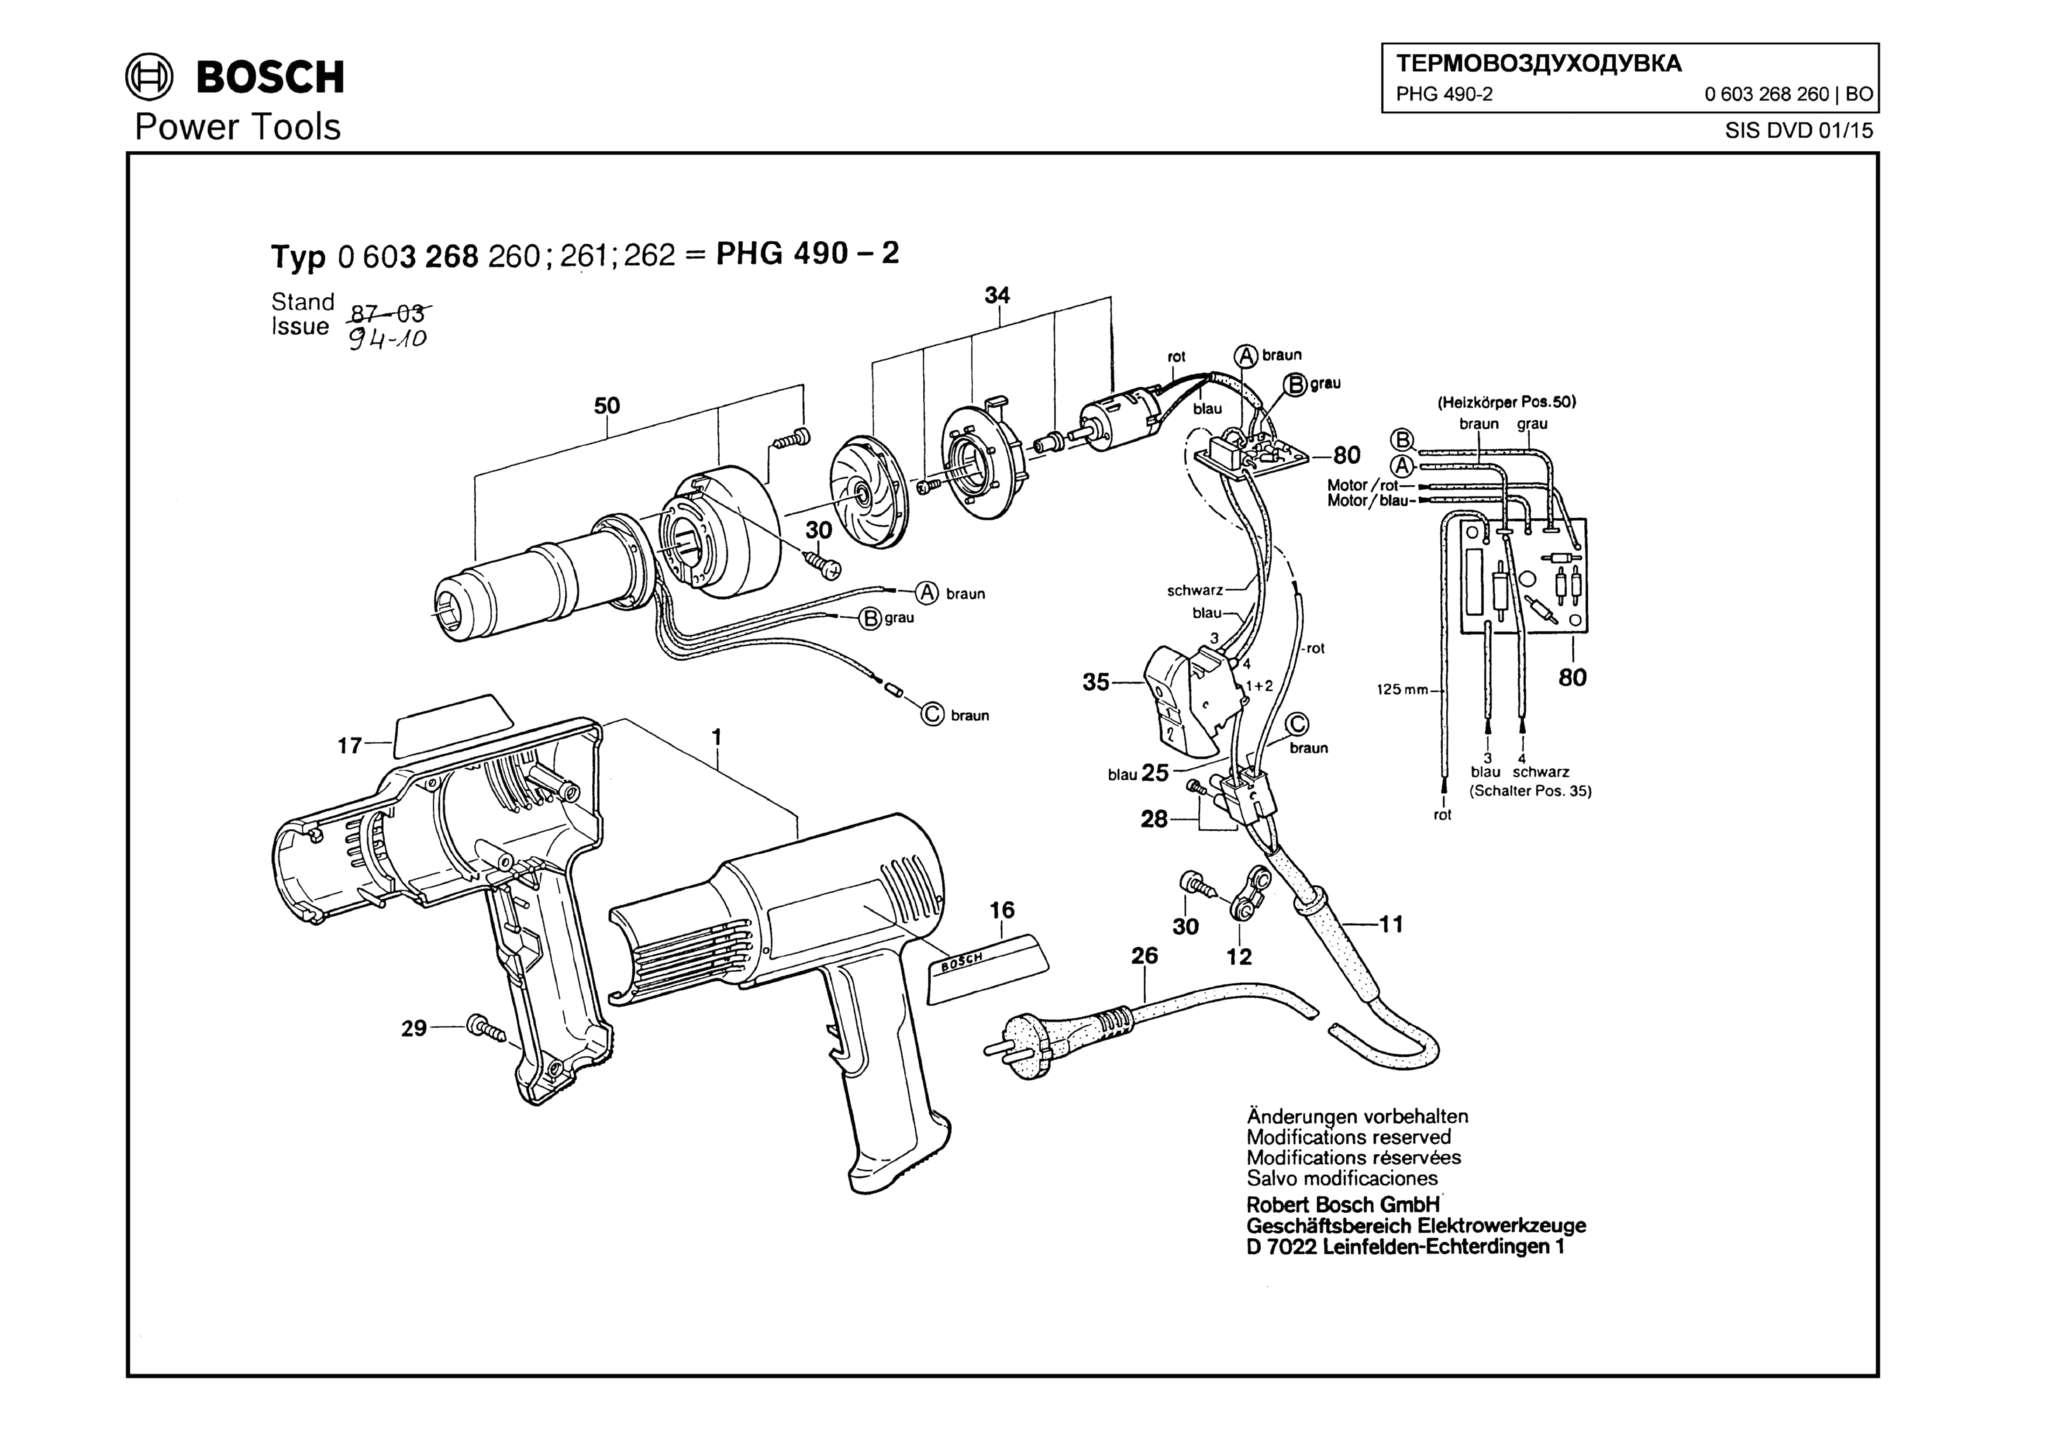 Запчасти, схема и деталировка Bosch PHG 490-2 (ТИП 0603268260)